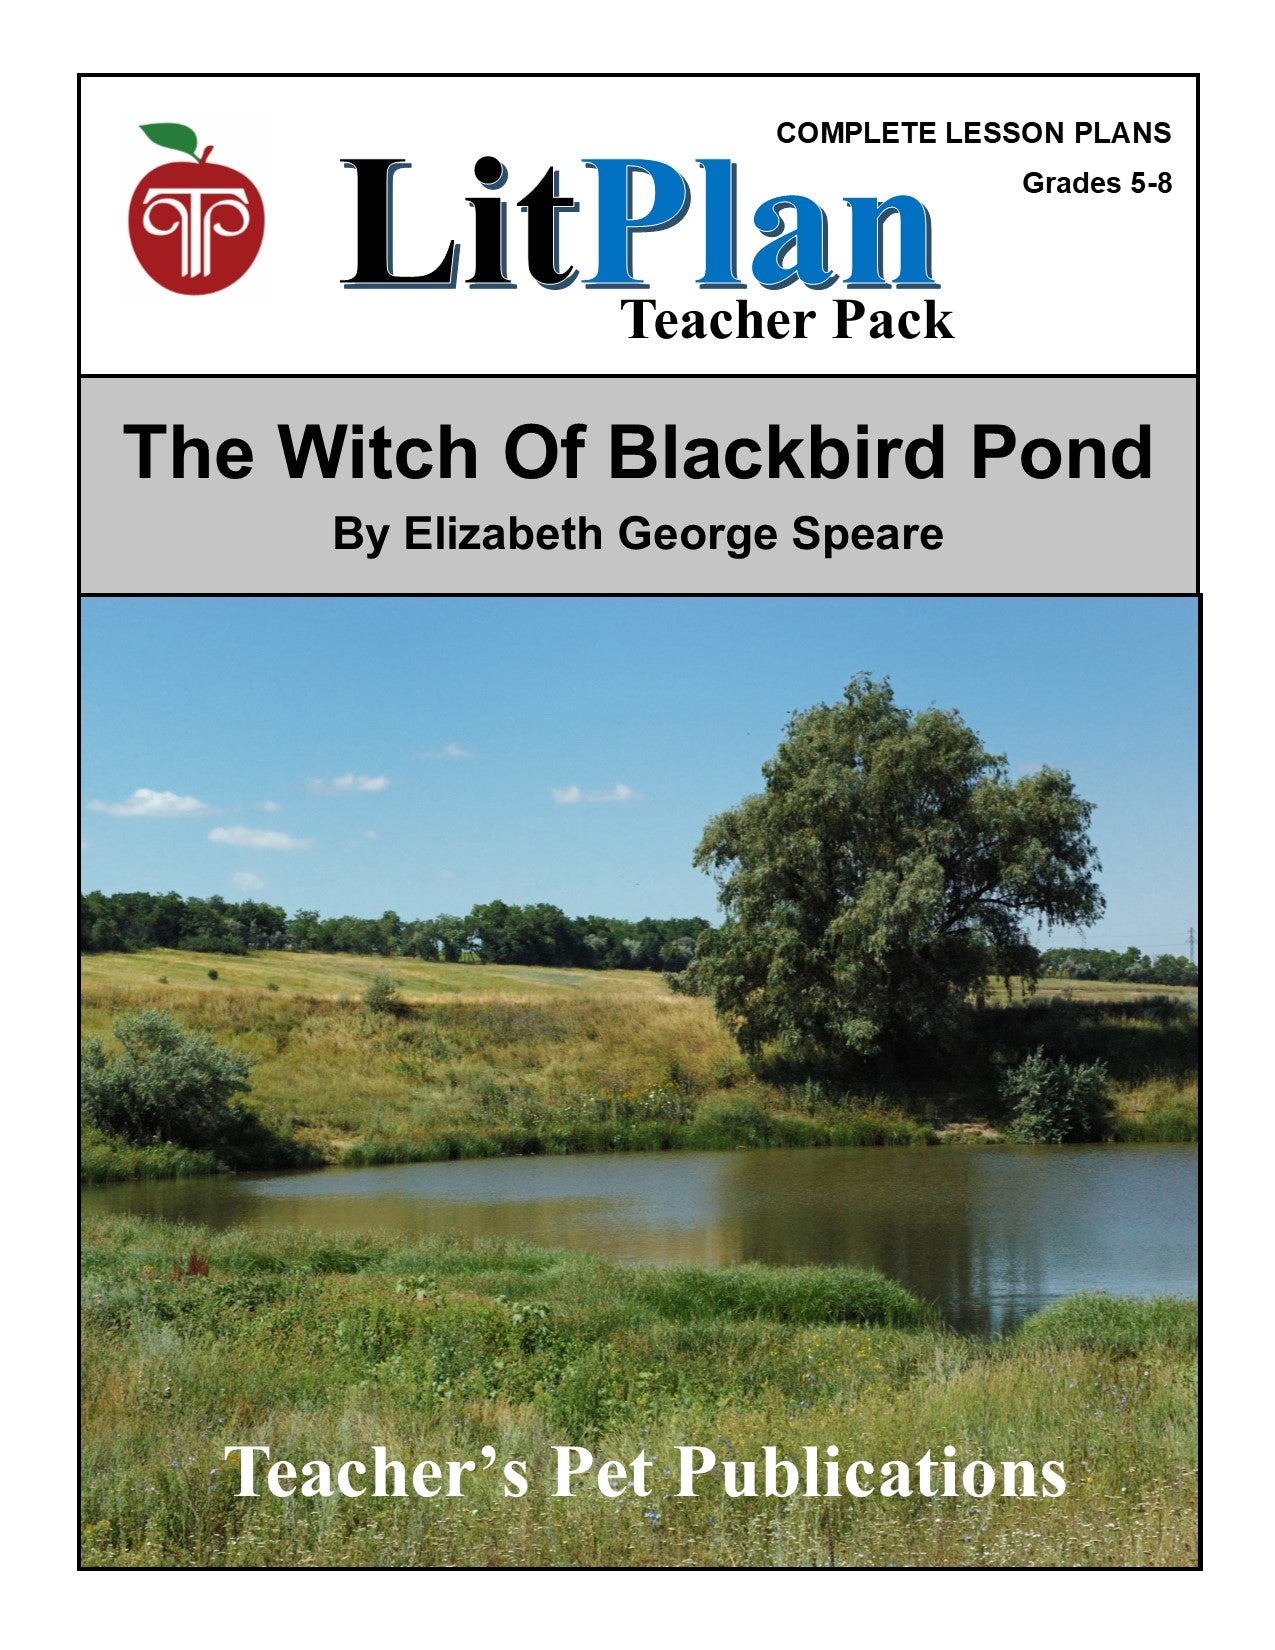 The Witch of Blackbird Pond: LitPlan Teacher Pack Grades 5-8